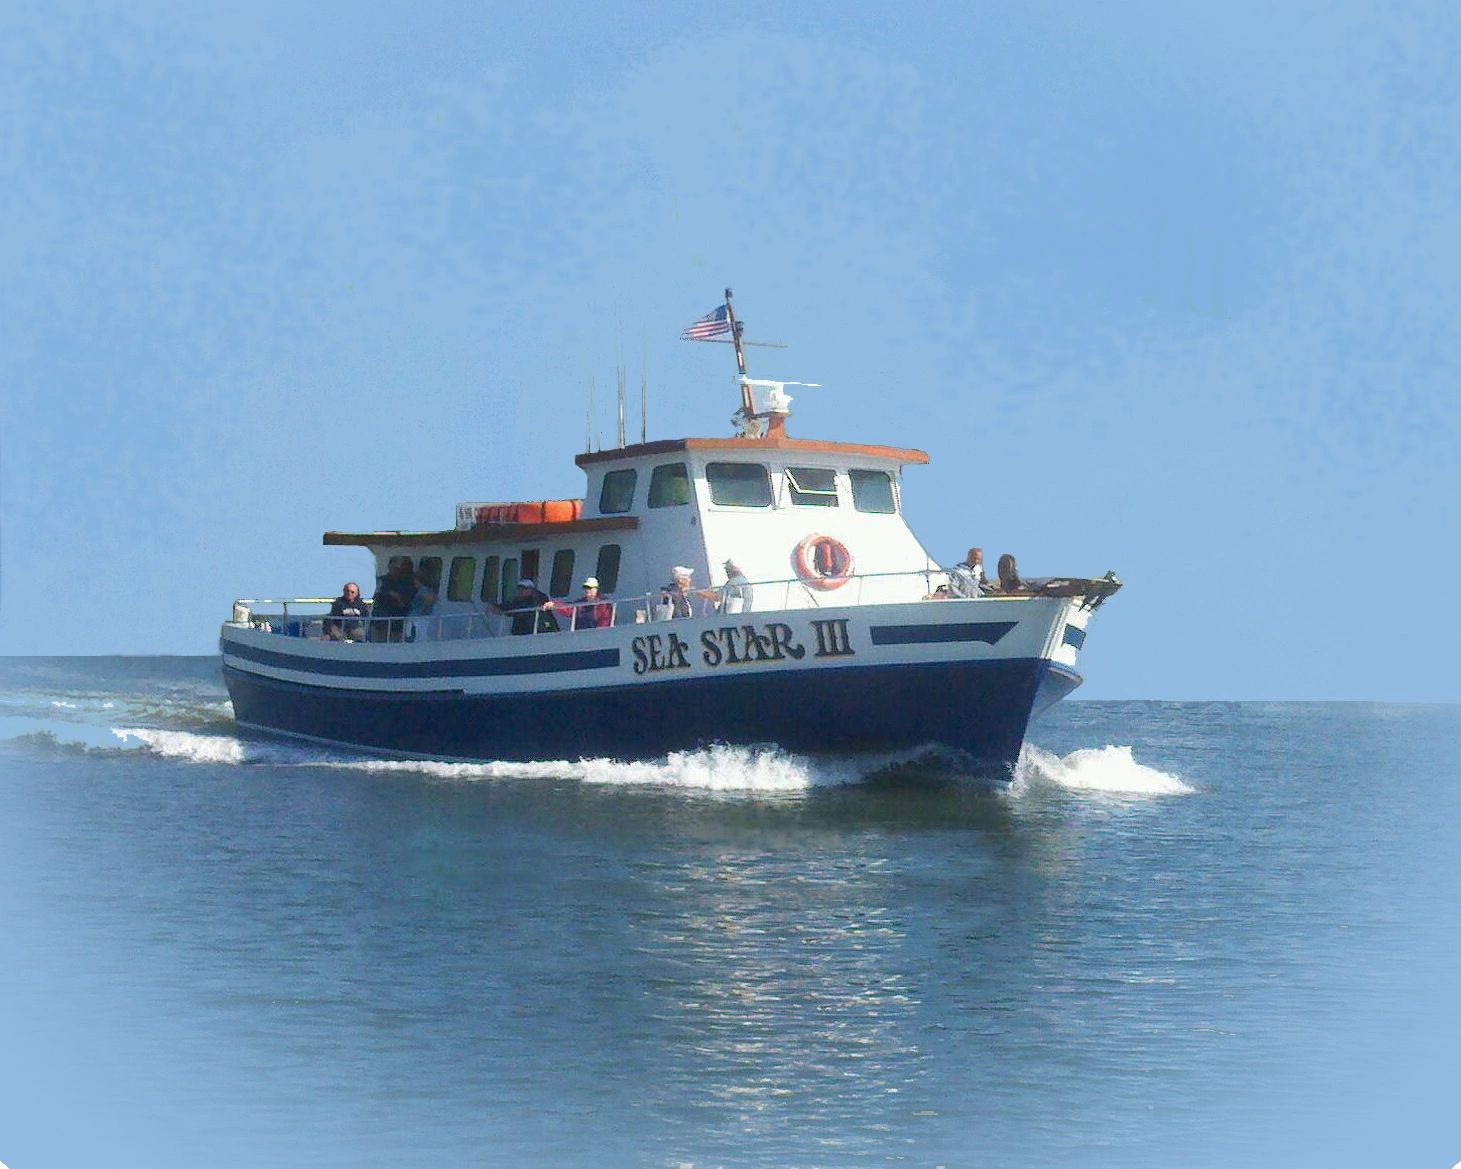 Atlantic Fishing Trips Cape May, NJ SEA STAR III Deep